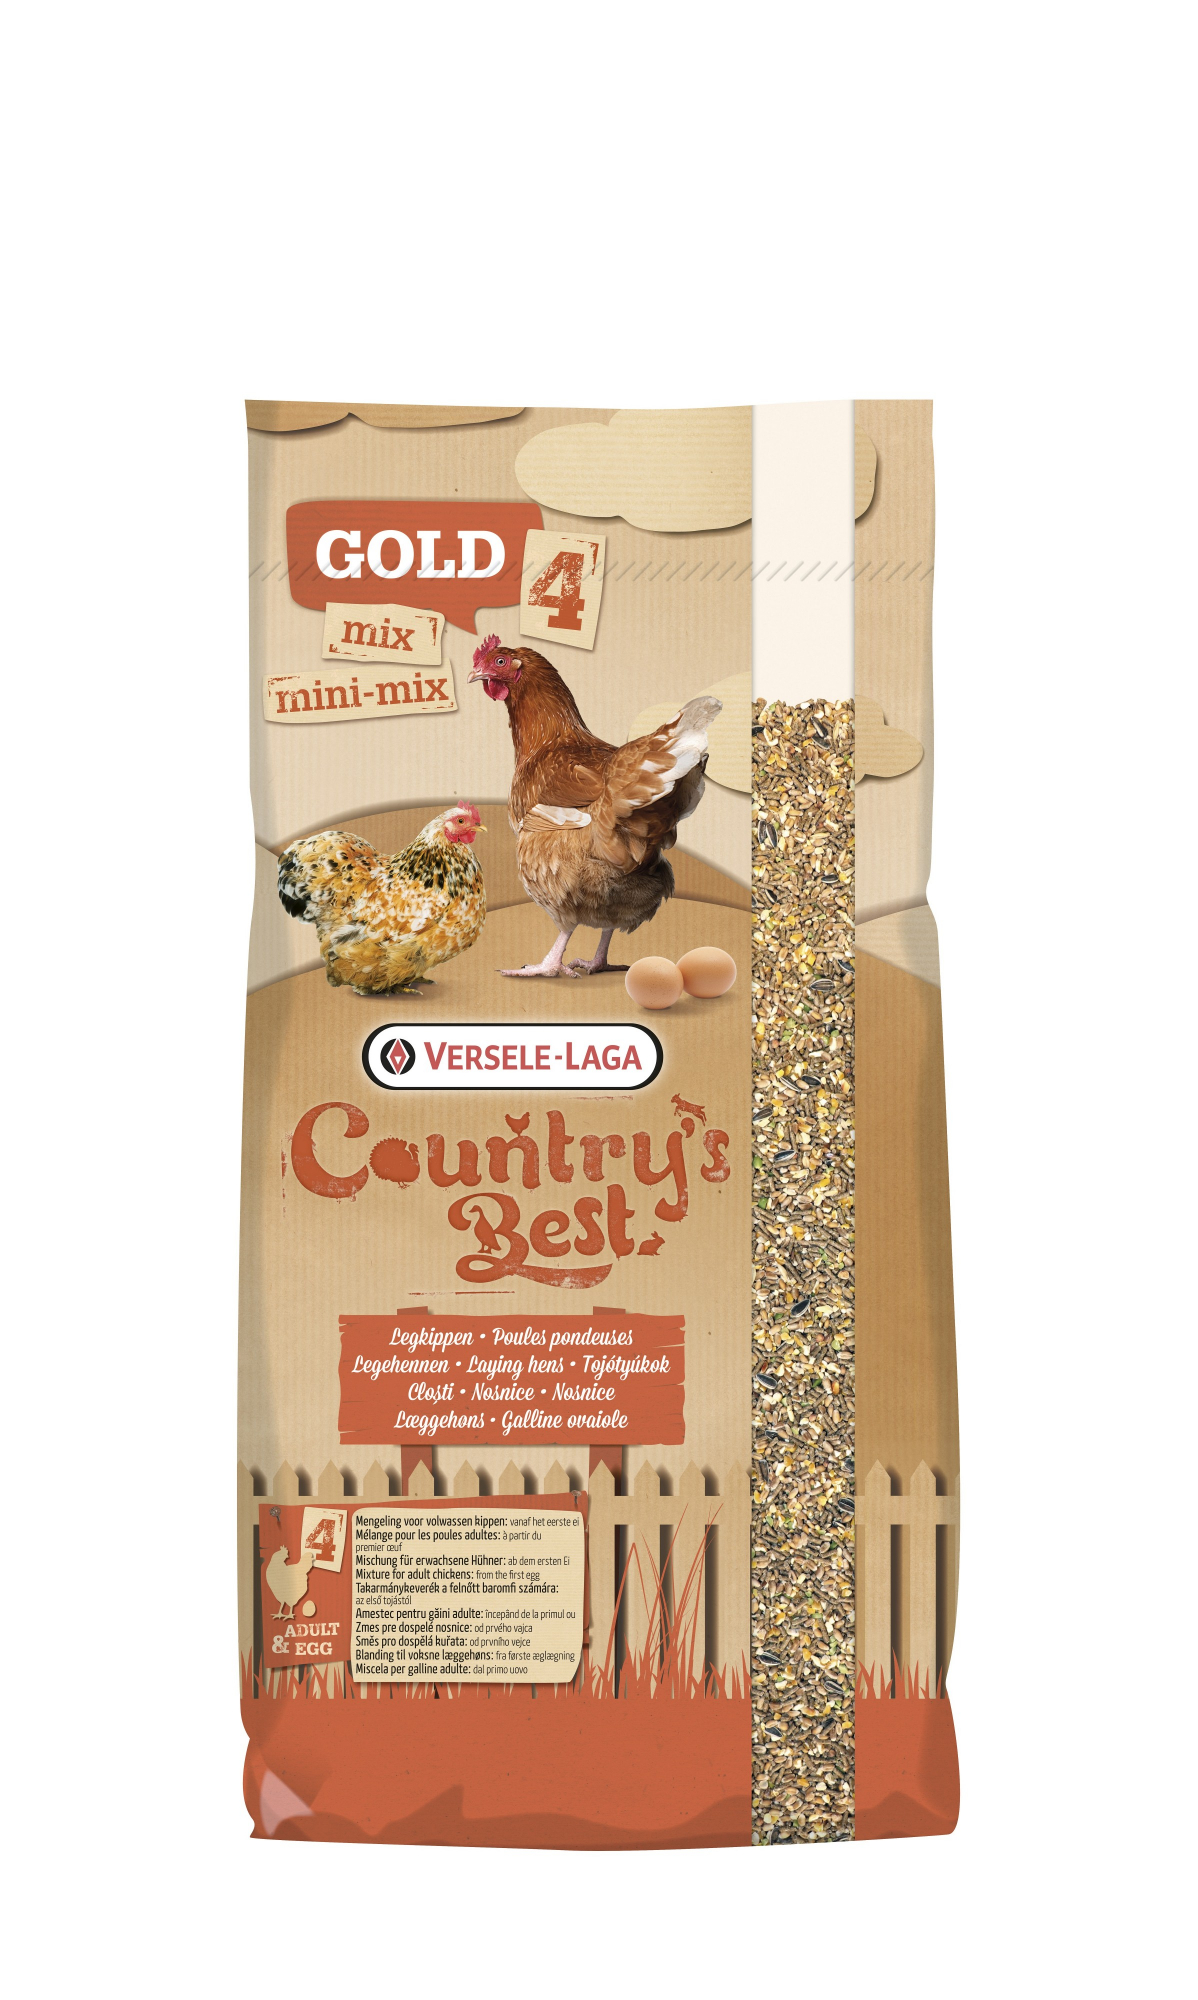 Gold 4 Mix Country's Best Mistura de cereais Alimentação adaptada para galinhas poedeiras